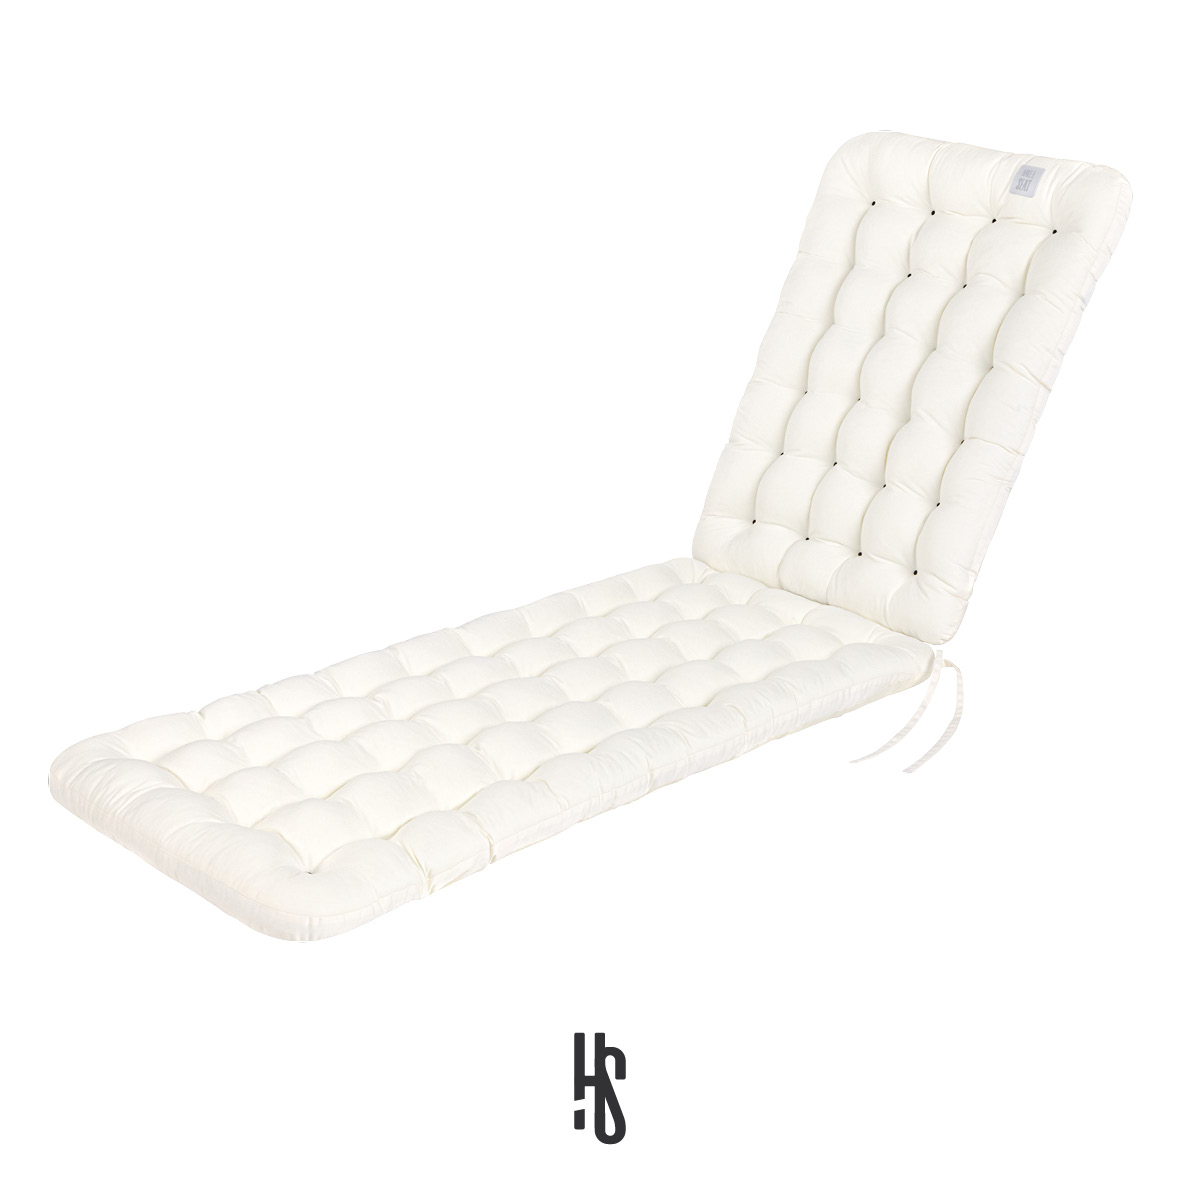 Auflage für Deckchair / Liegestuhl / Relaxstuhl Weiß mit Premium-Sitz-/Liegekomfort inkl. orthopädisches Outdoor Nackenkissen | HAVE A SEAT Living